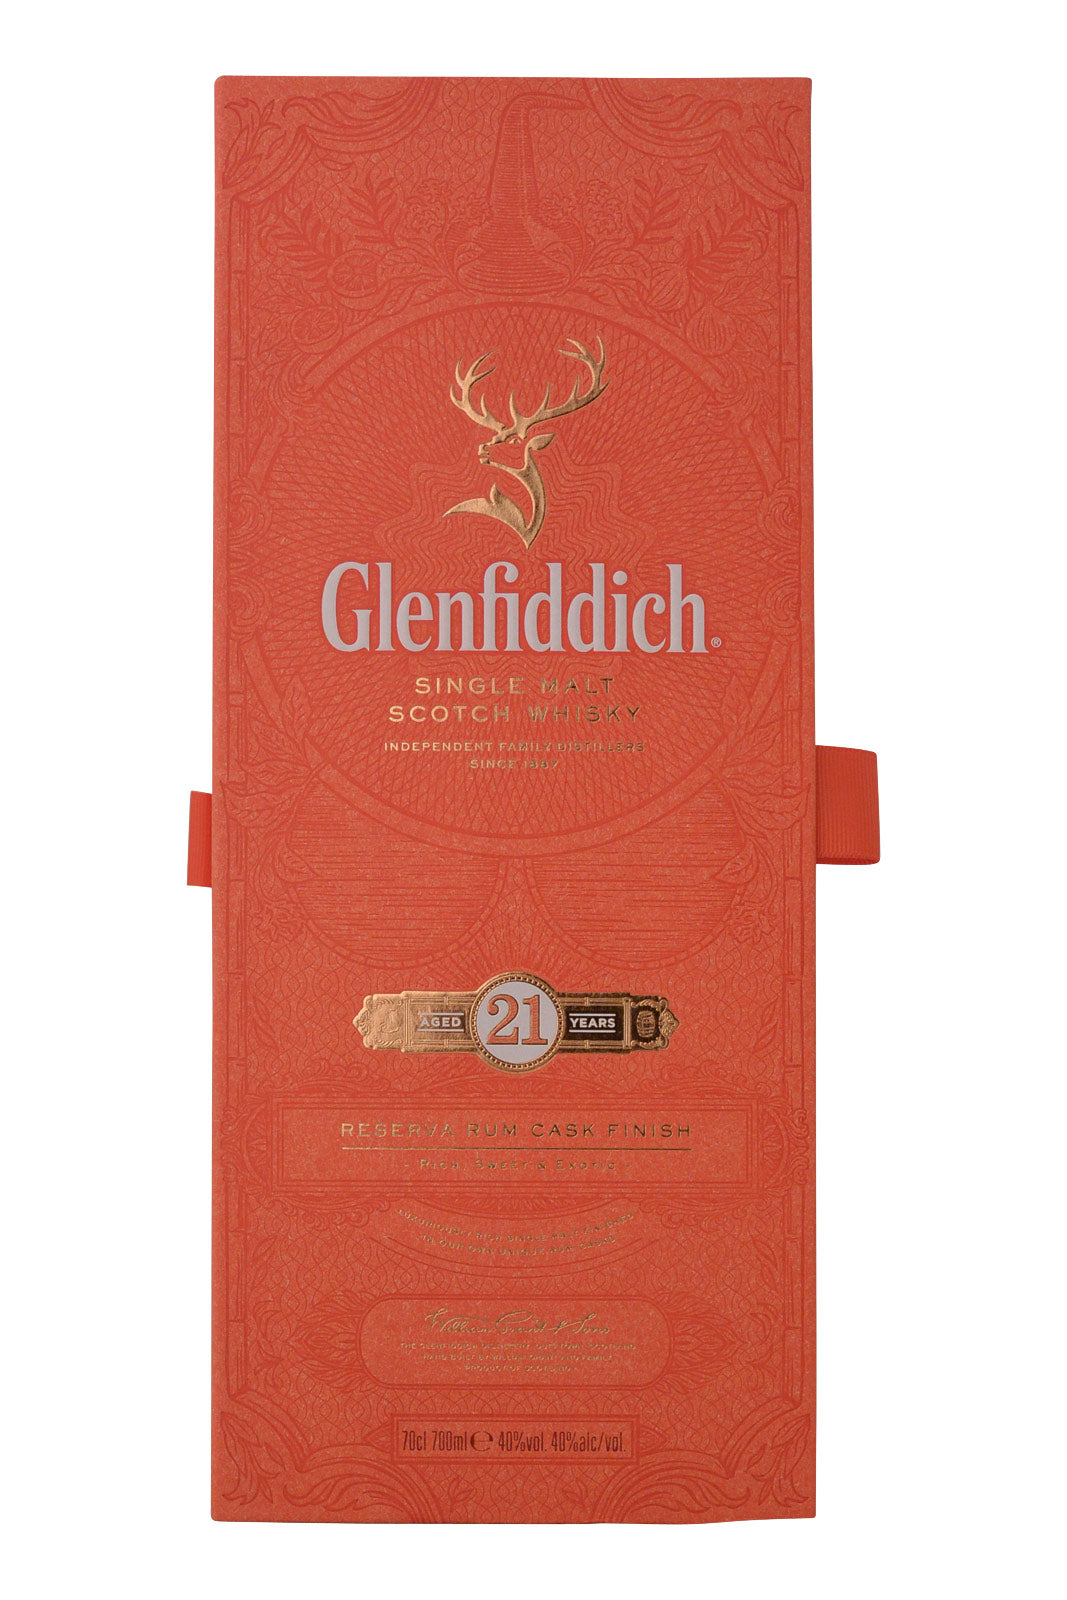 Glenfiddich 21 Year Old